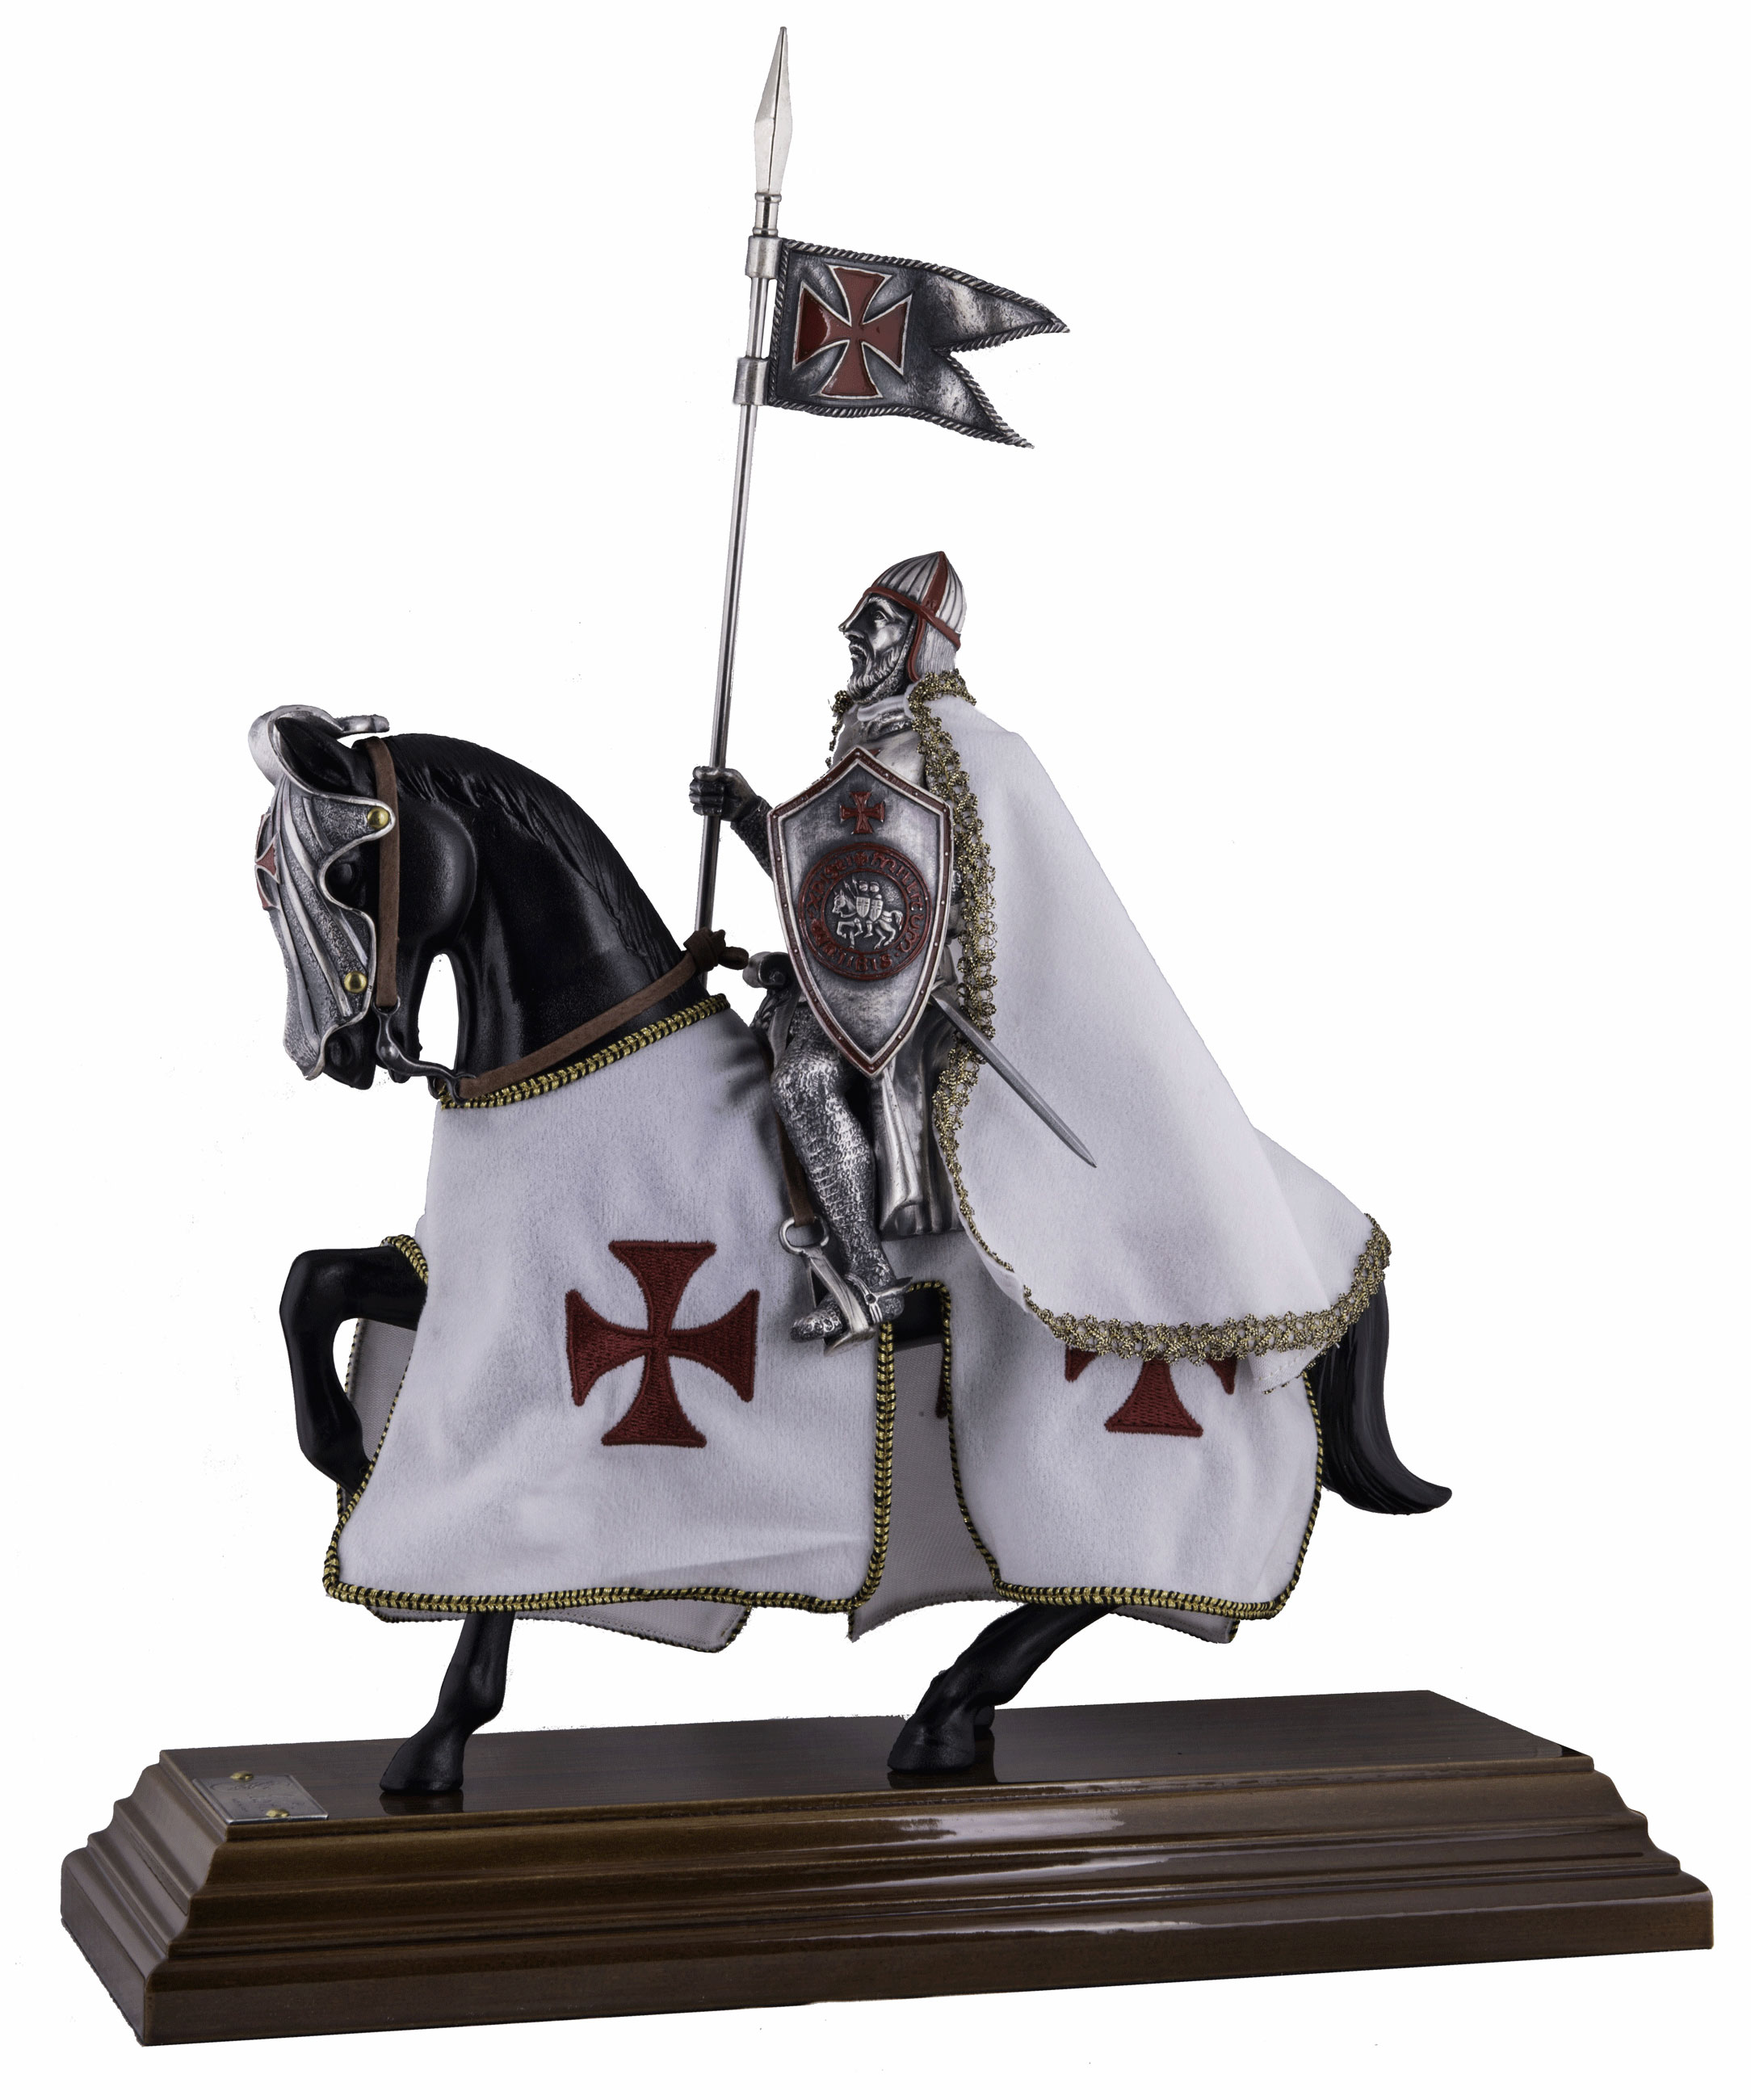 Miniatur Templer Ritter auf Pferd, Reiterrüstung 